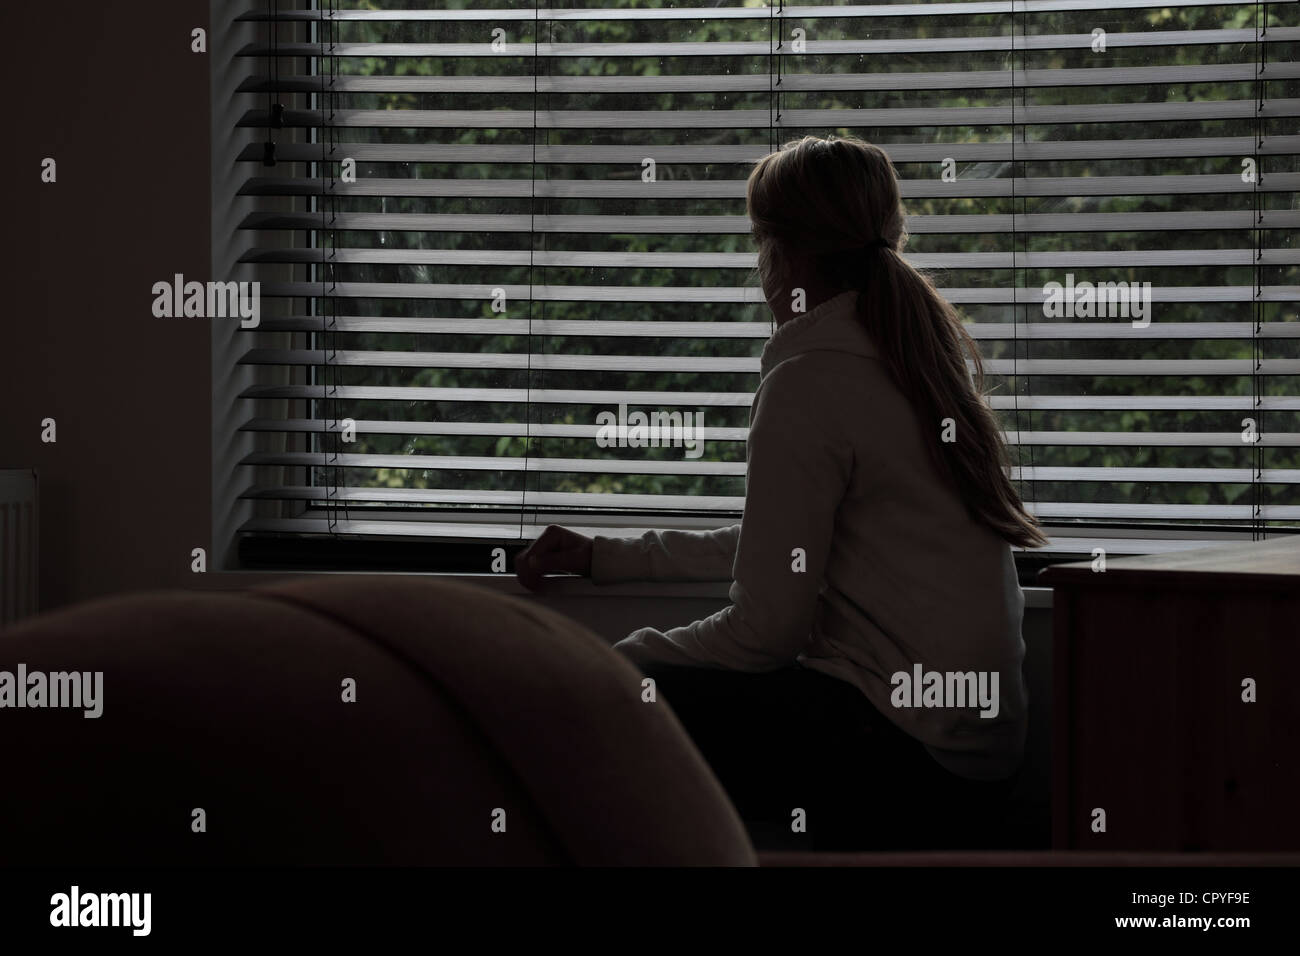 Junge Frau sitzt allein in einem dunklen Raum mit Blick durch ein Fenster Blind. Stockfoto